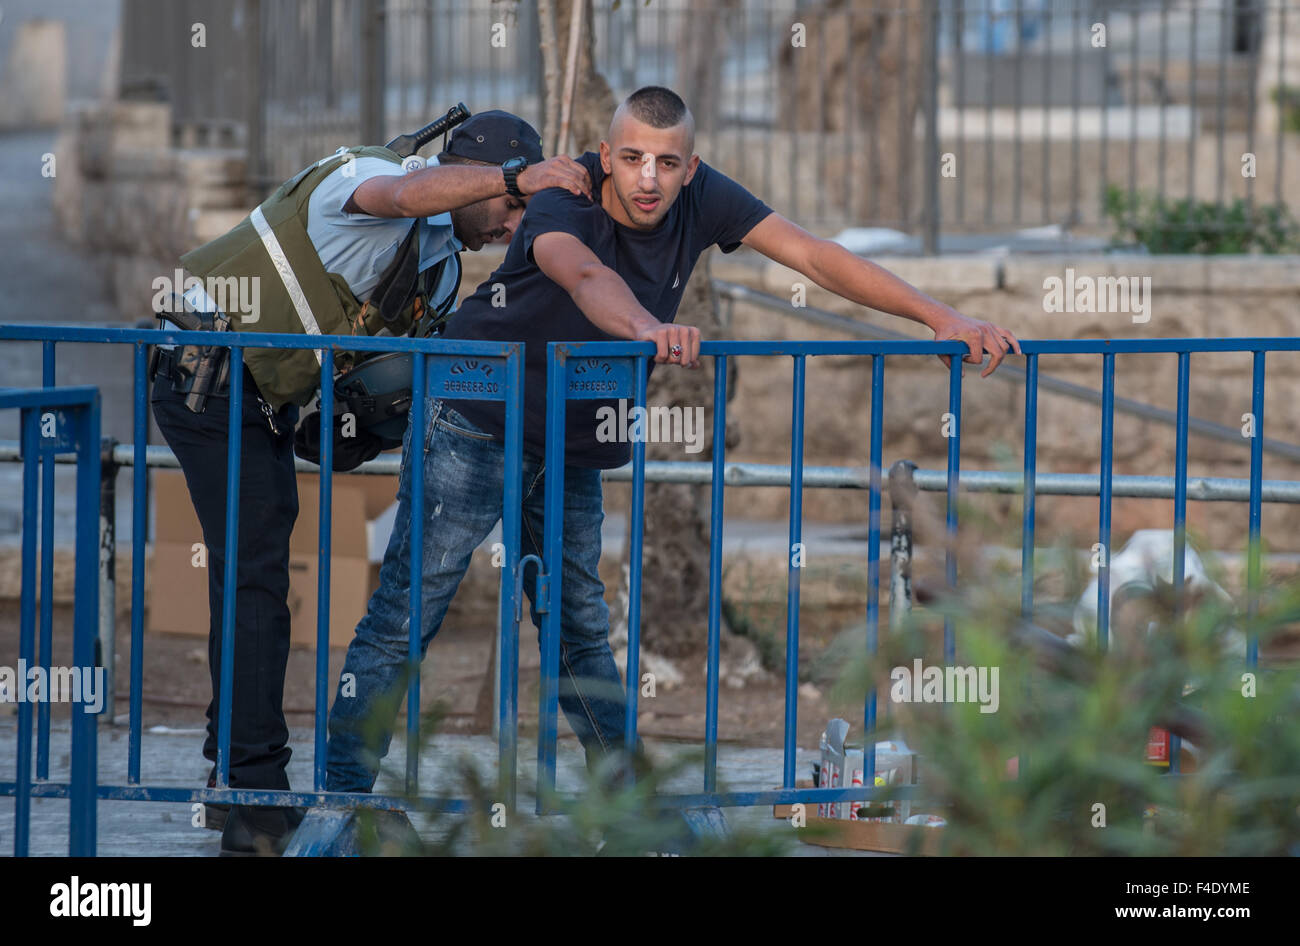 Jérusalem. 16 Oct, 2015. Un Palestinien est fouillée par un policier israélien à la Porte de Damas dans la vieille ville de Jérusalem, le 16 octobre 2015. Cinq Palestiniens ont été tués vendredi dans des affrontements qui ont éclaté entre Palestiniens et l'armée israélienne en Cisjordanie et dans la bande de Gaza, selon des sources médicales. Les factions palestiniennes ont appelé à une journée de 'rage', et d'une escalade de la manifestations populaires contre l'occupation israélienne en Cisjordanie, Jérusalem-Est et la bande de Gaza, entre la tension qui entre dans sa troisième semaine consécutive. Crédit : Li Rui/Xinhua/Alamy Live News Banque D'Images